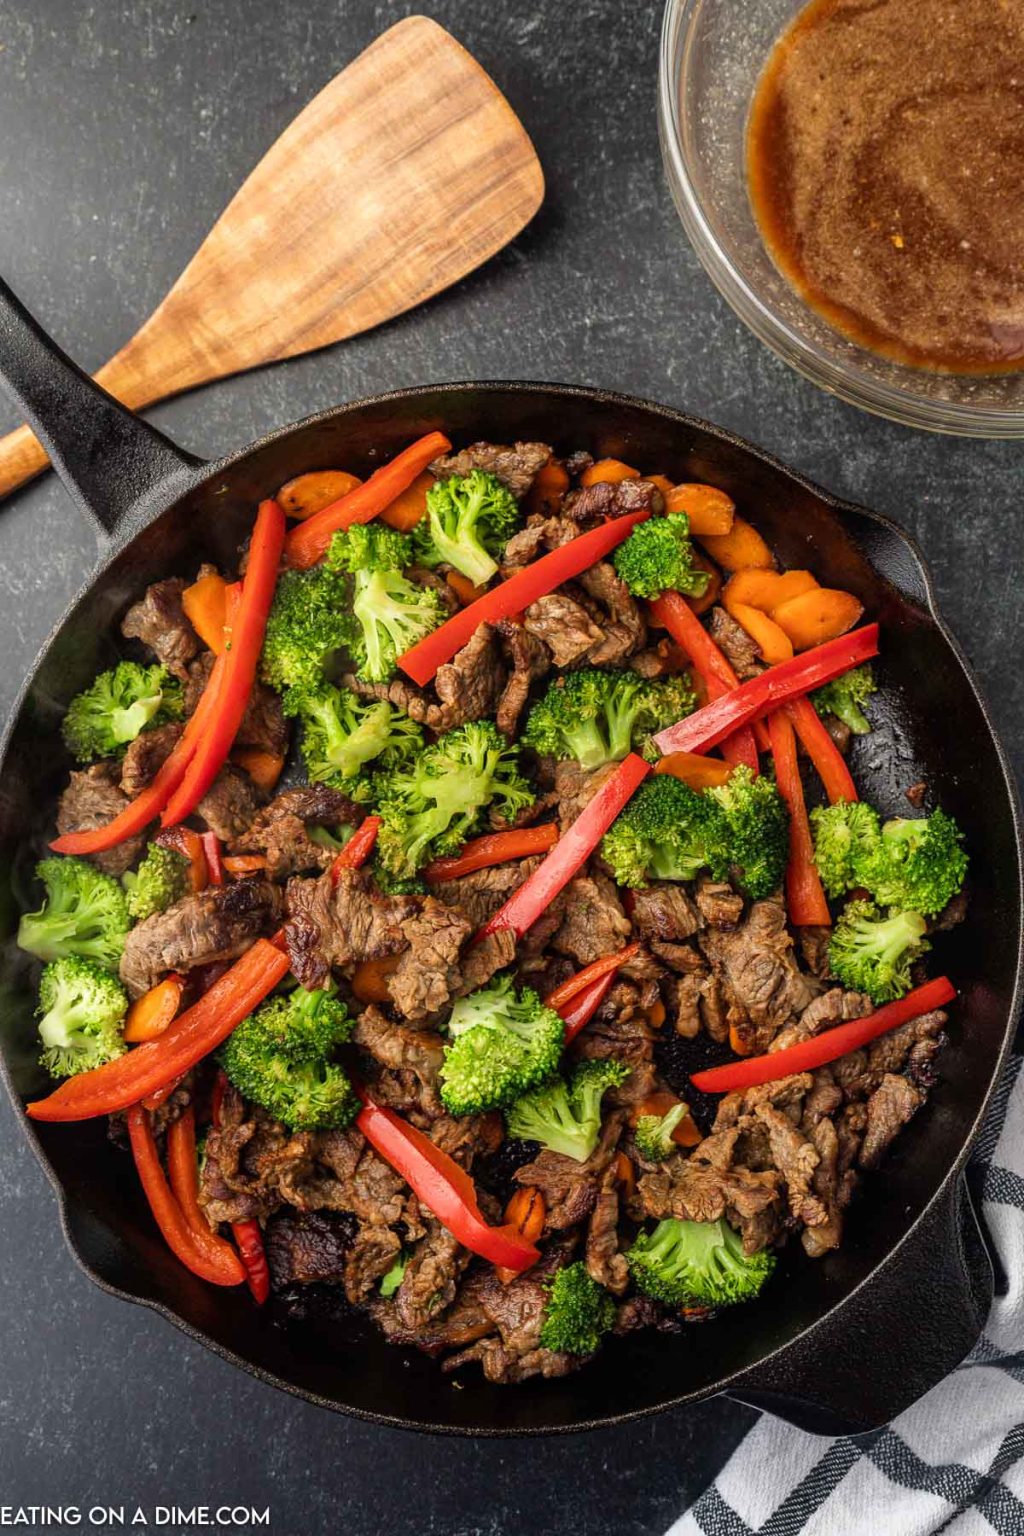 Easy Beef Stir Fry Recipe - healthy beef stir fry in minutes